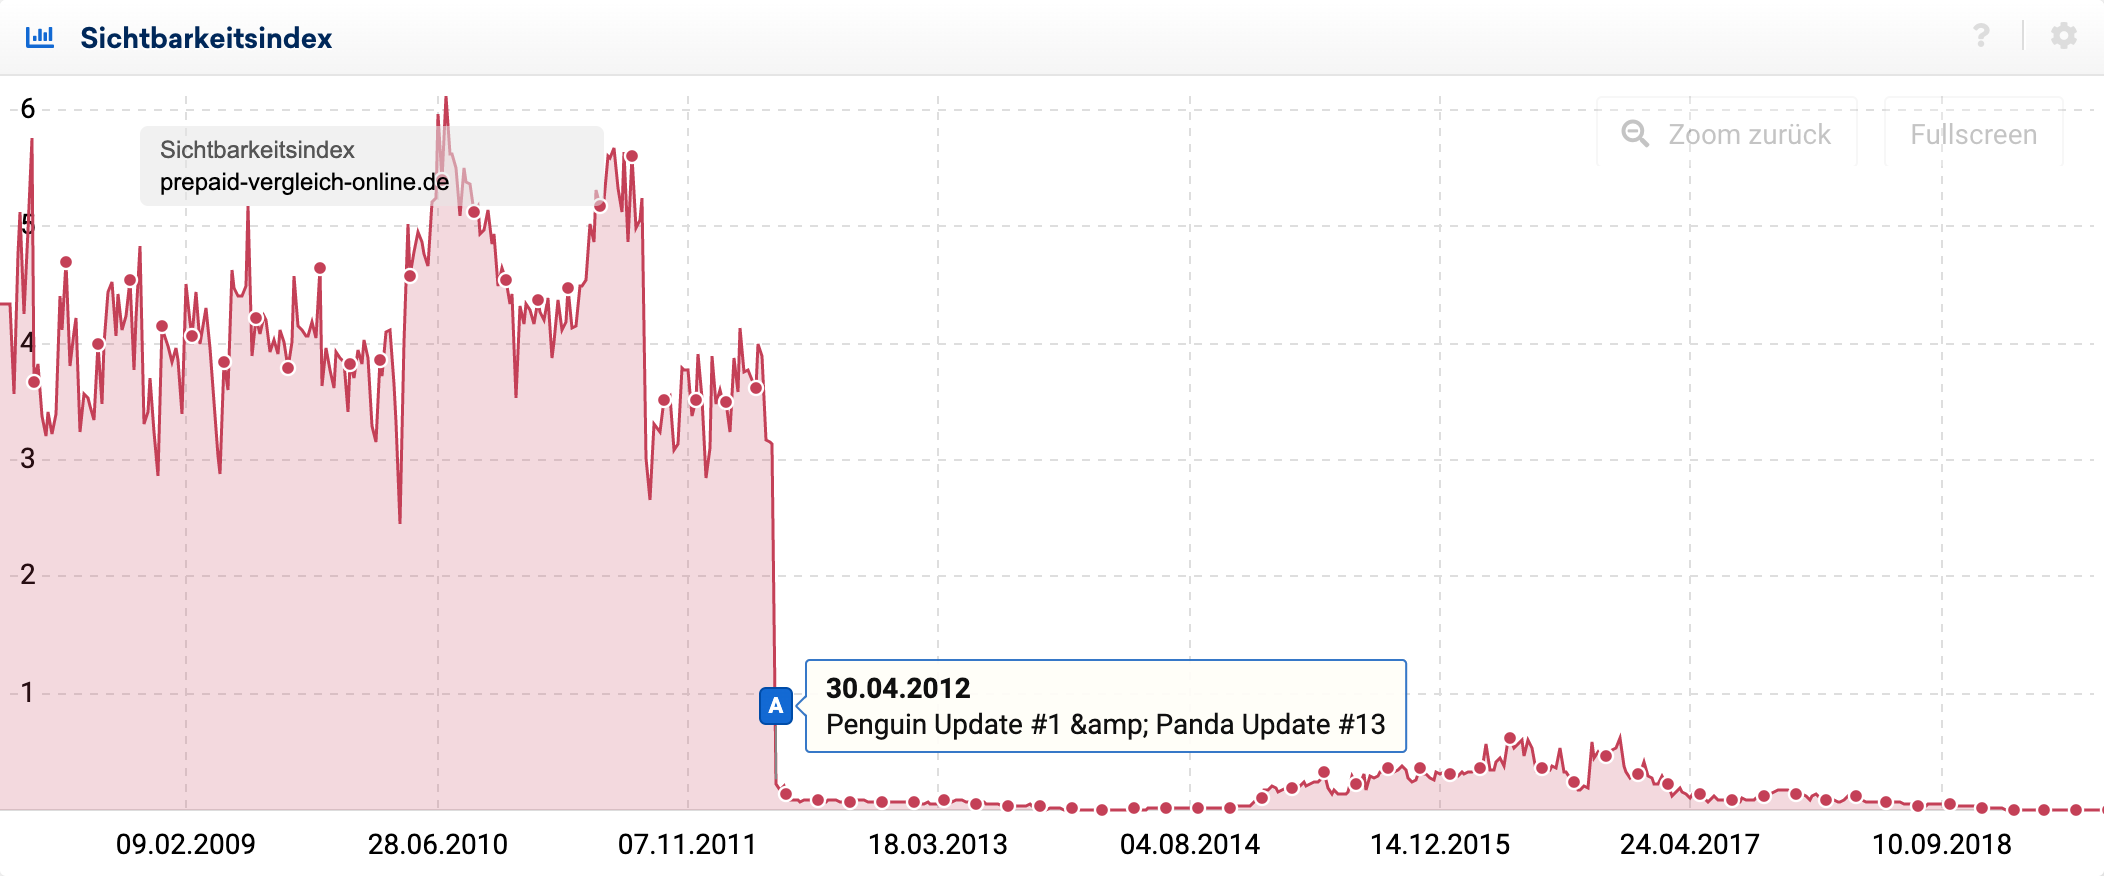 Sichtbarkeitsindex-Verlauf für ein Domain die 2012 vom Penguin Update betroffen wurde und sich seitdem nicht mehr in der Sichtbarkeit erholt hat.